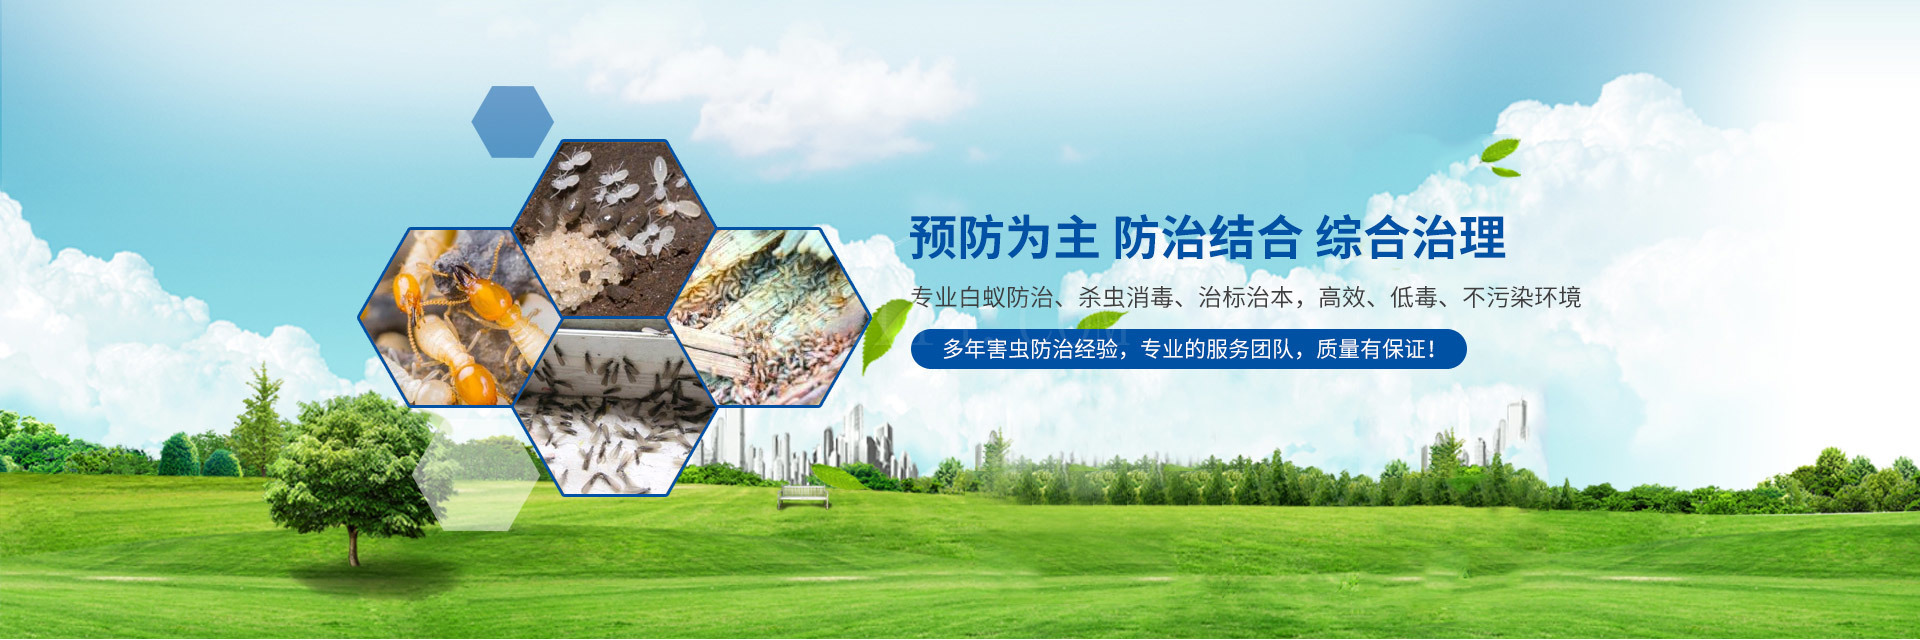 漳州新洁生物科技有限公司